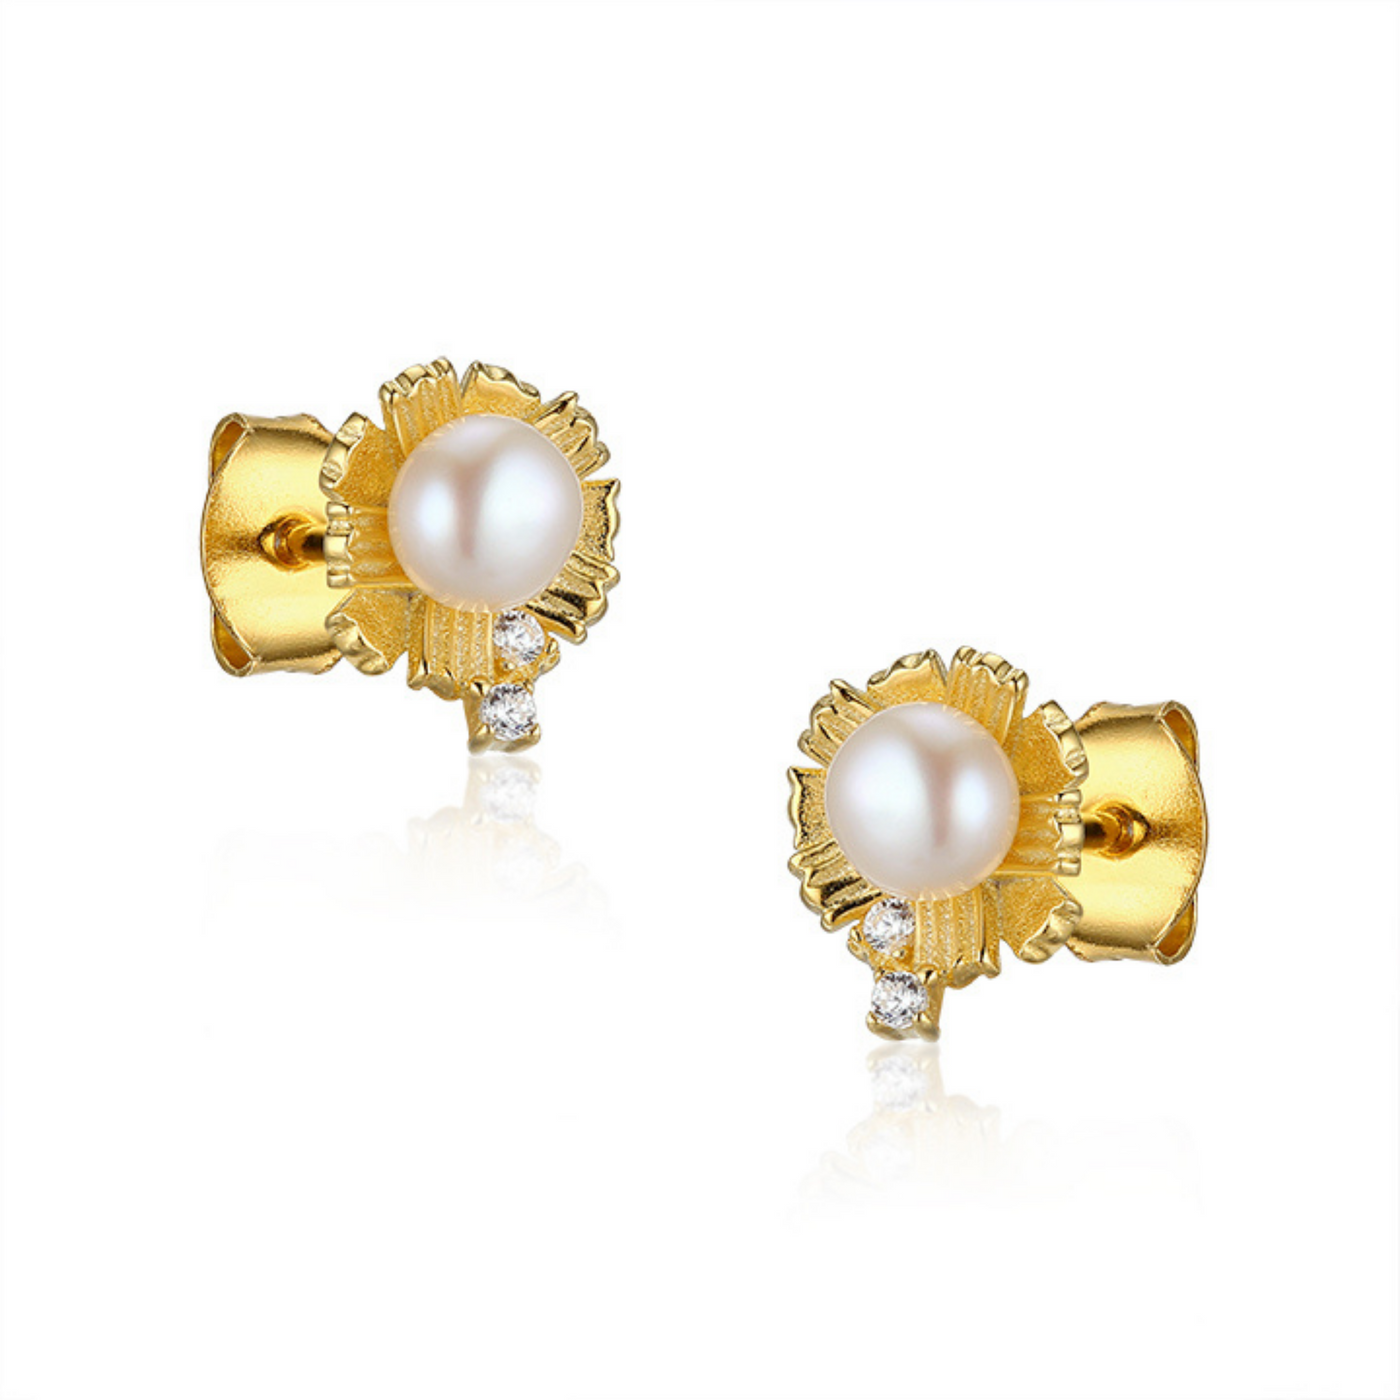 Edna Gold Earrings